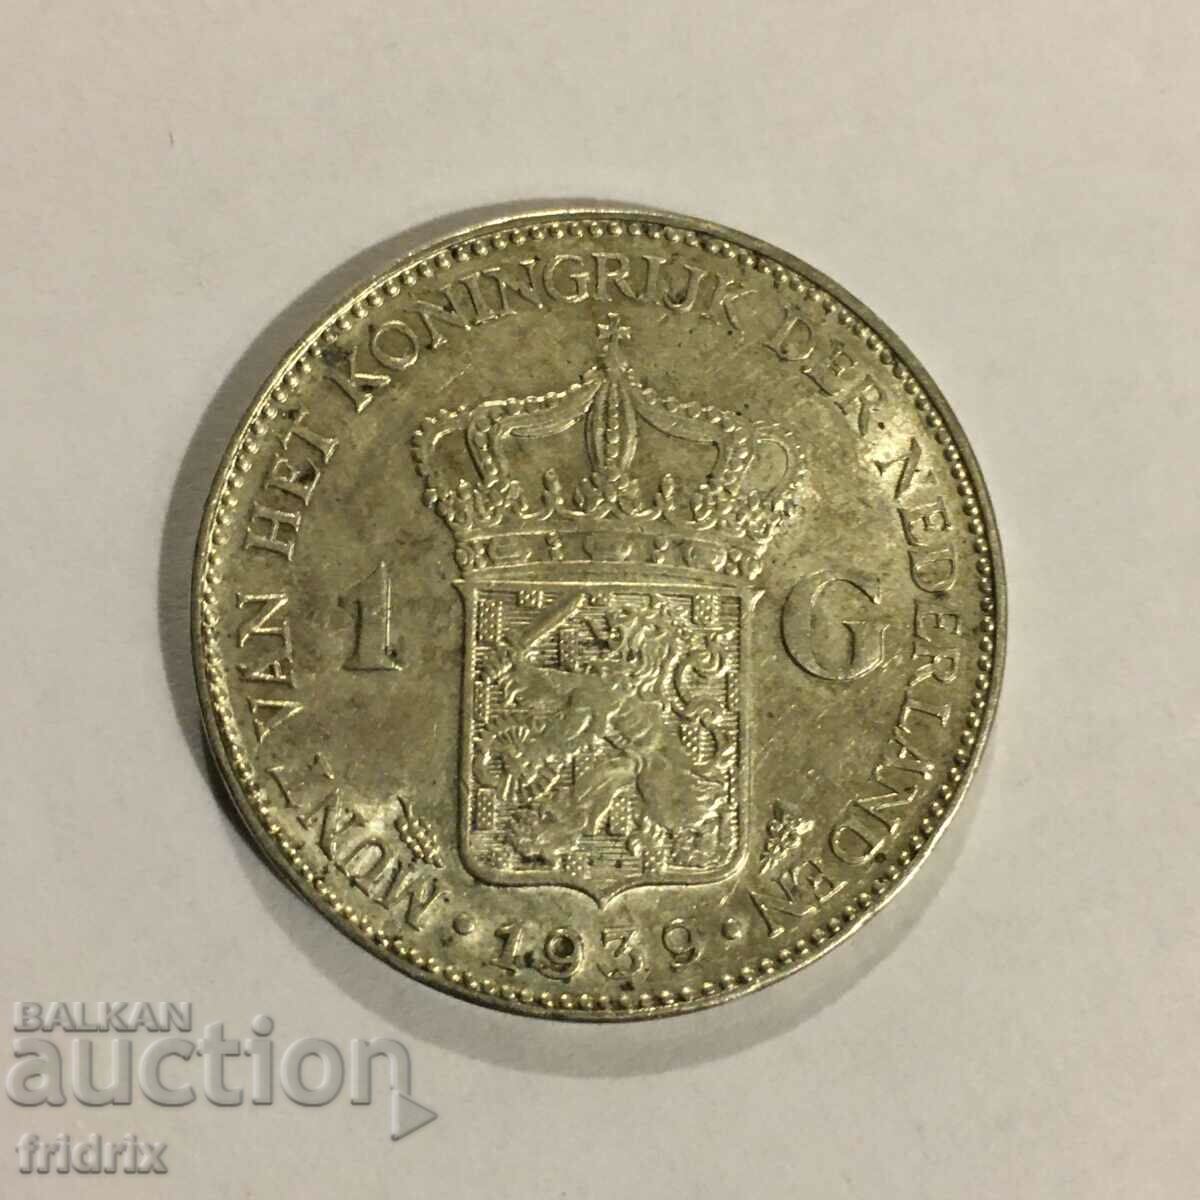 Țările de Jos 1 gulden 1939 / Olanda 1 gulden 1939 UNC